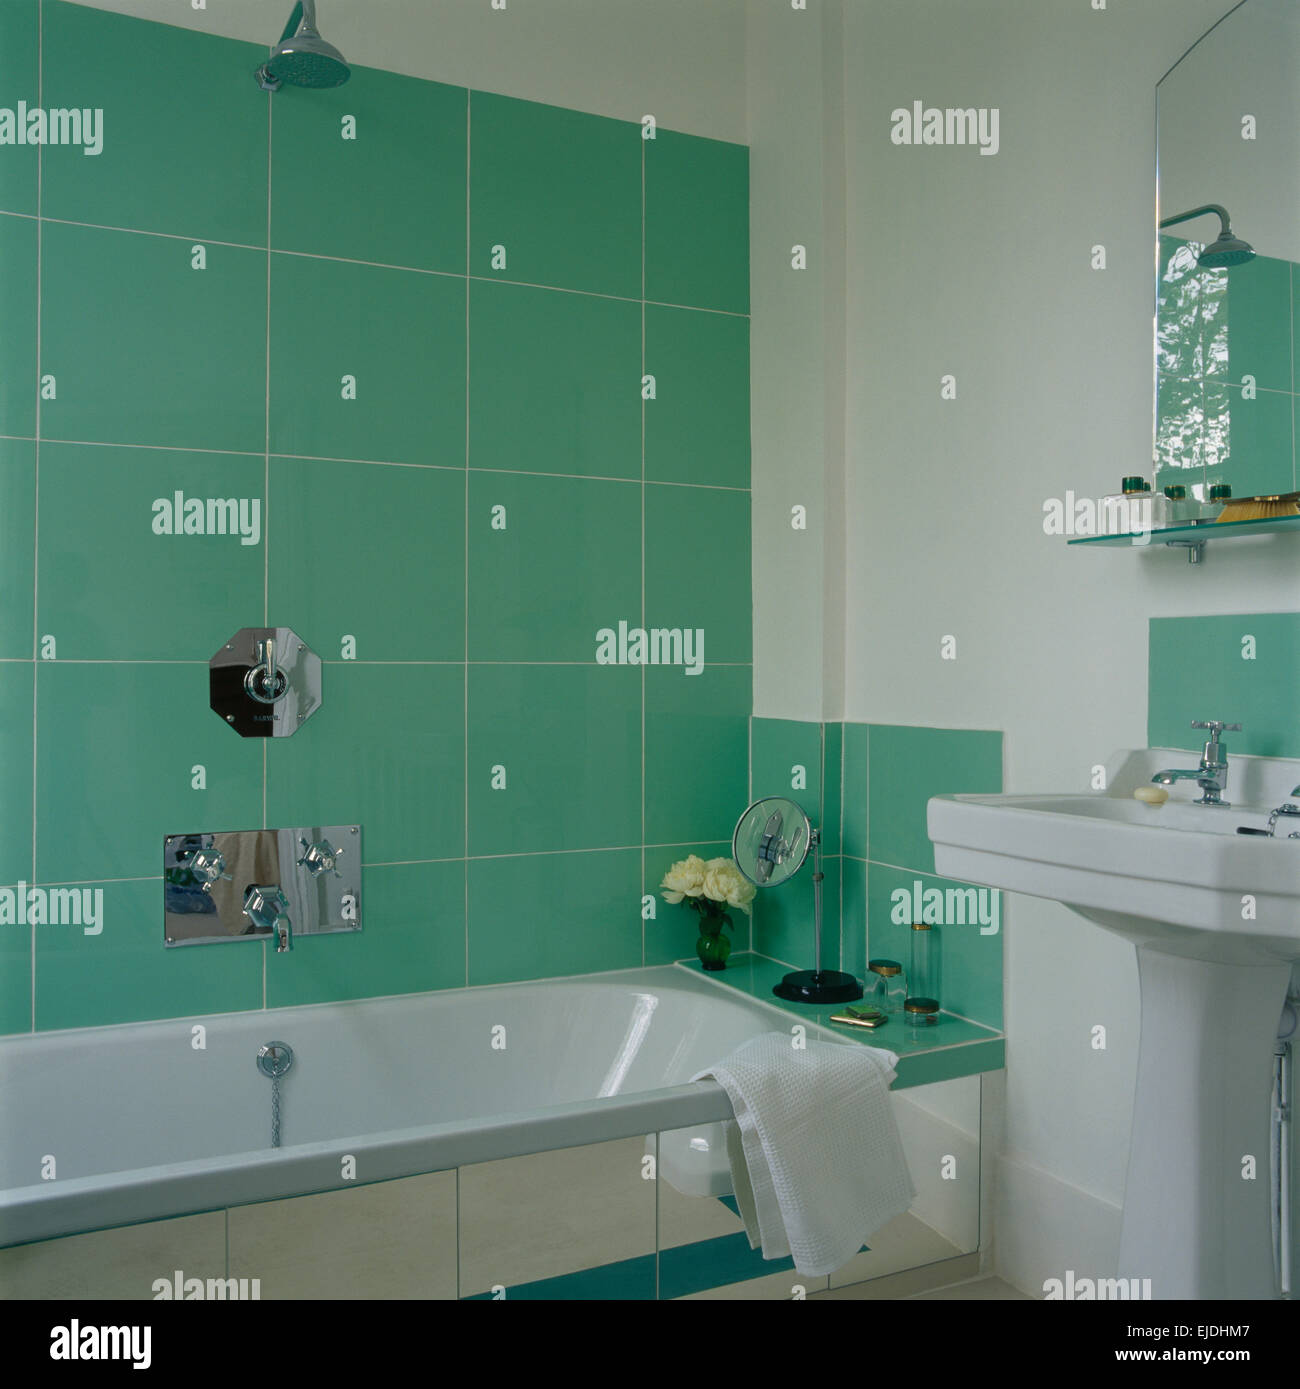 Badezimmer grün fliesen -Fotos und -Bildmaterial in hoher Auflösung – Alamy